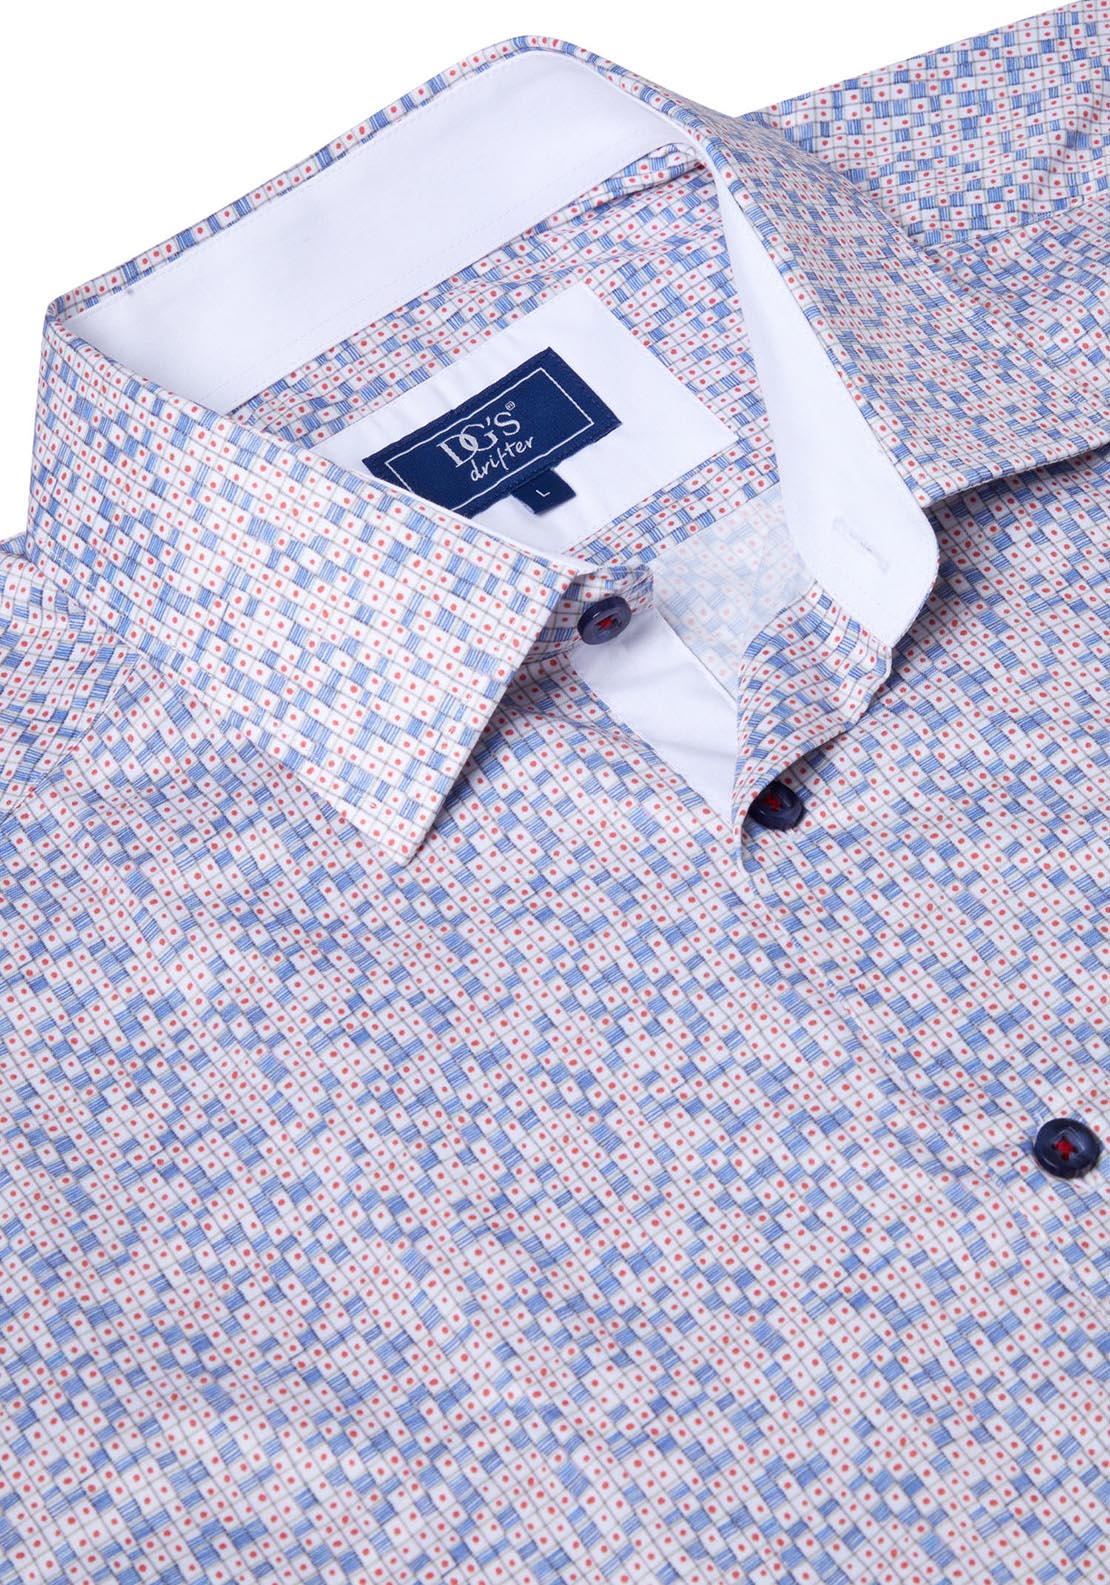 Drifter Short Sleeve Print Shirt 2 Shaws Department Stores